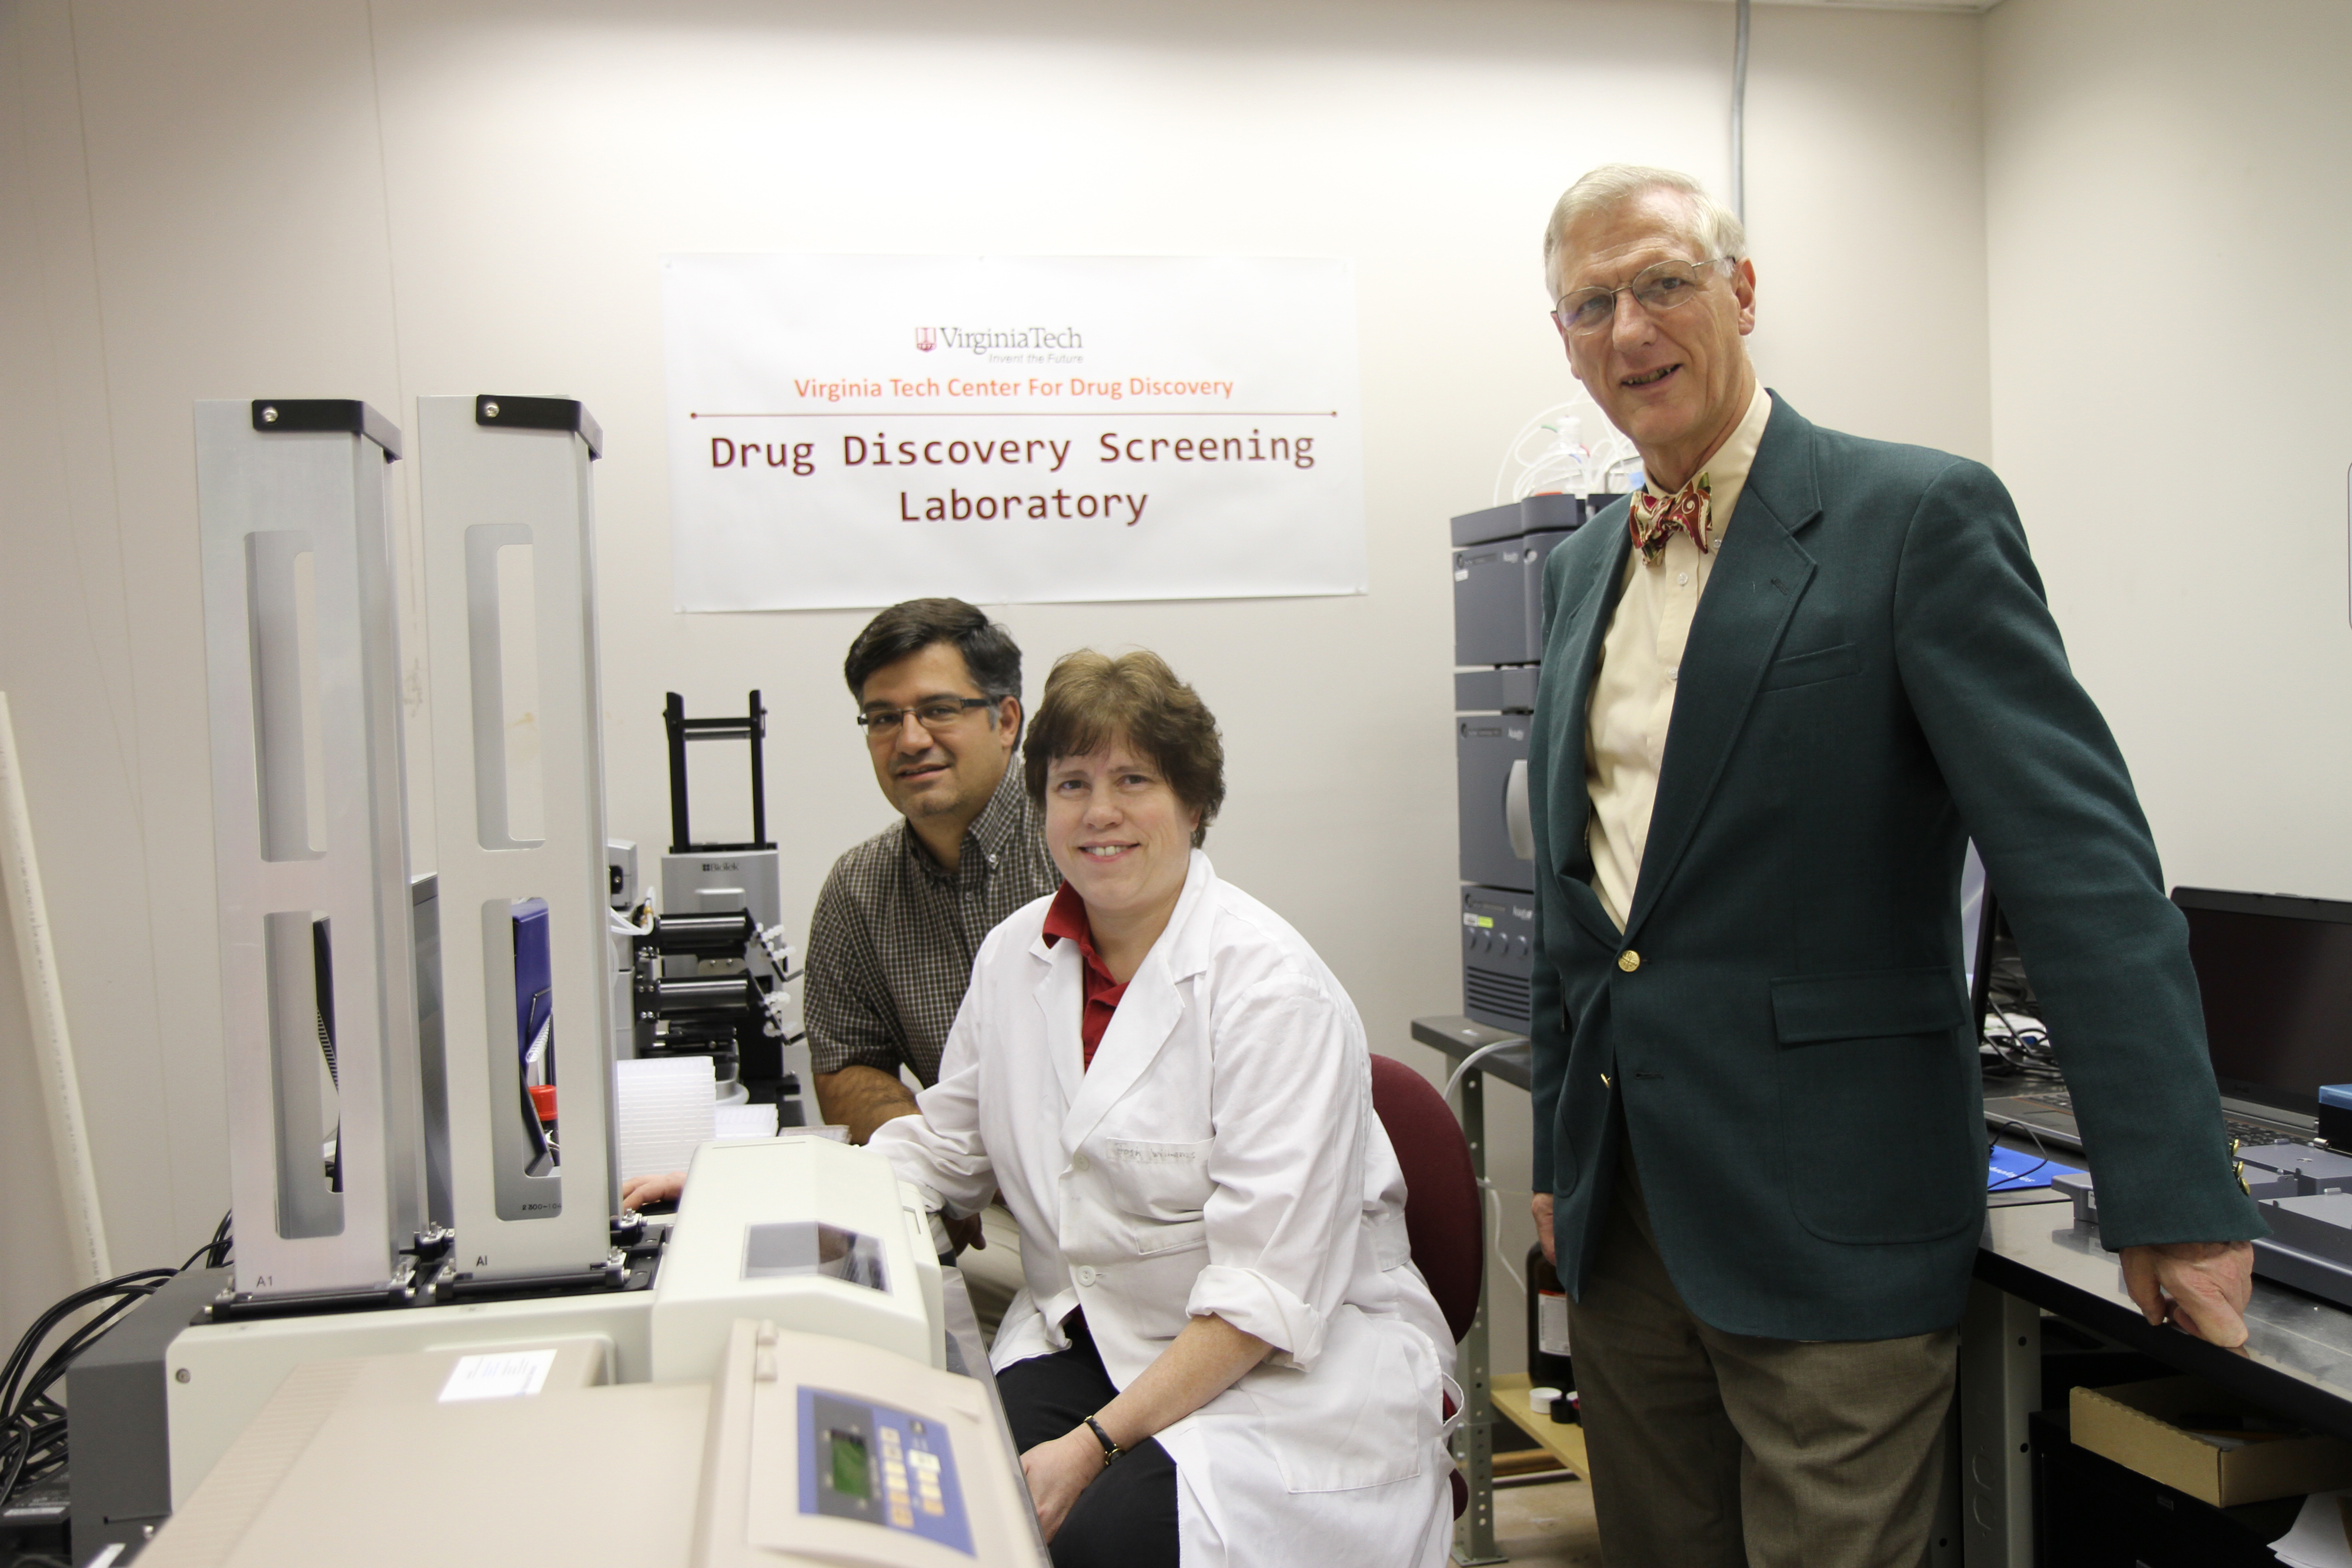 Sobrado, Vogelaar, and Kingston in lab